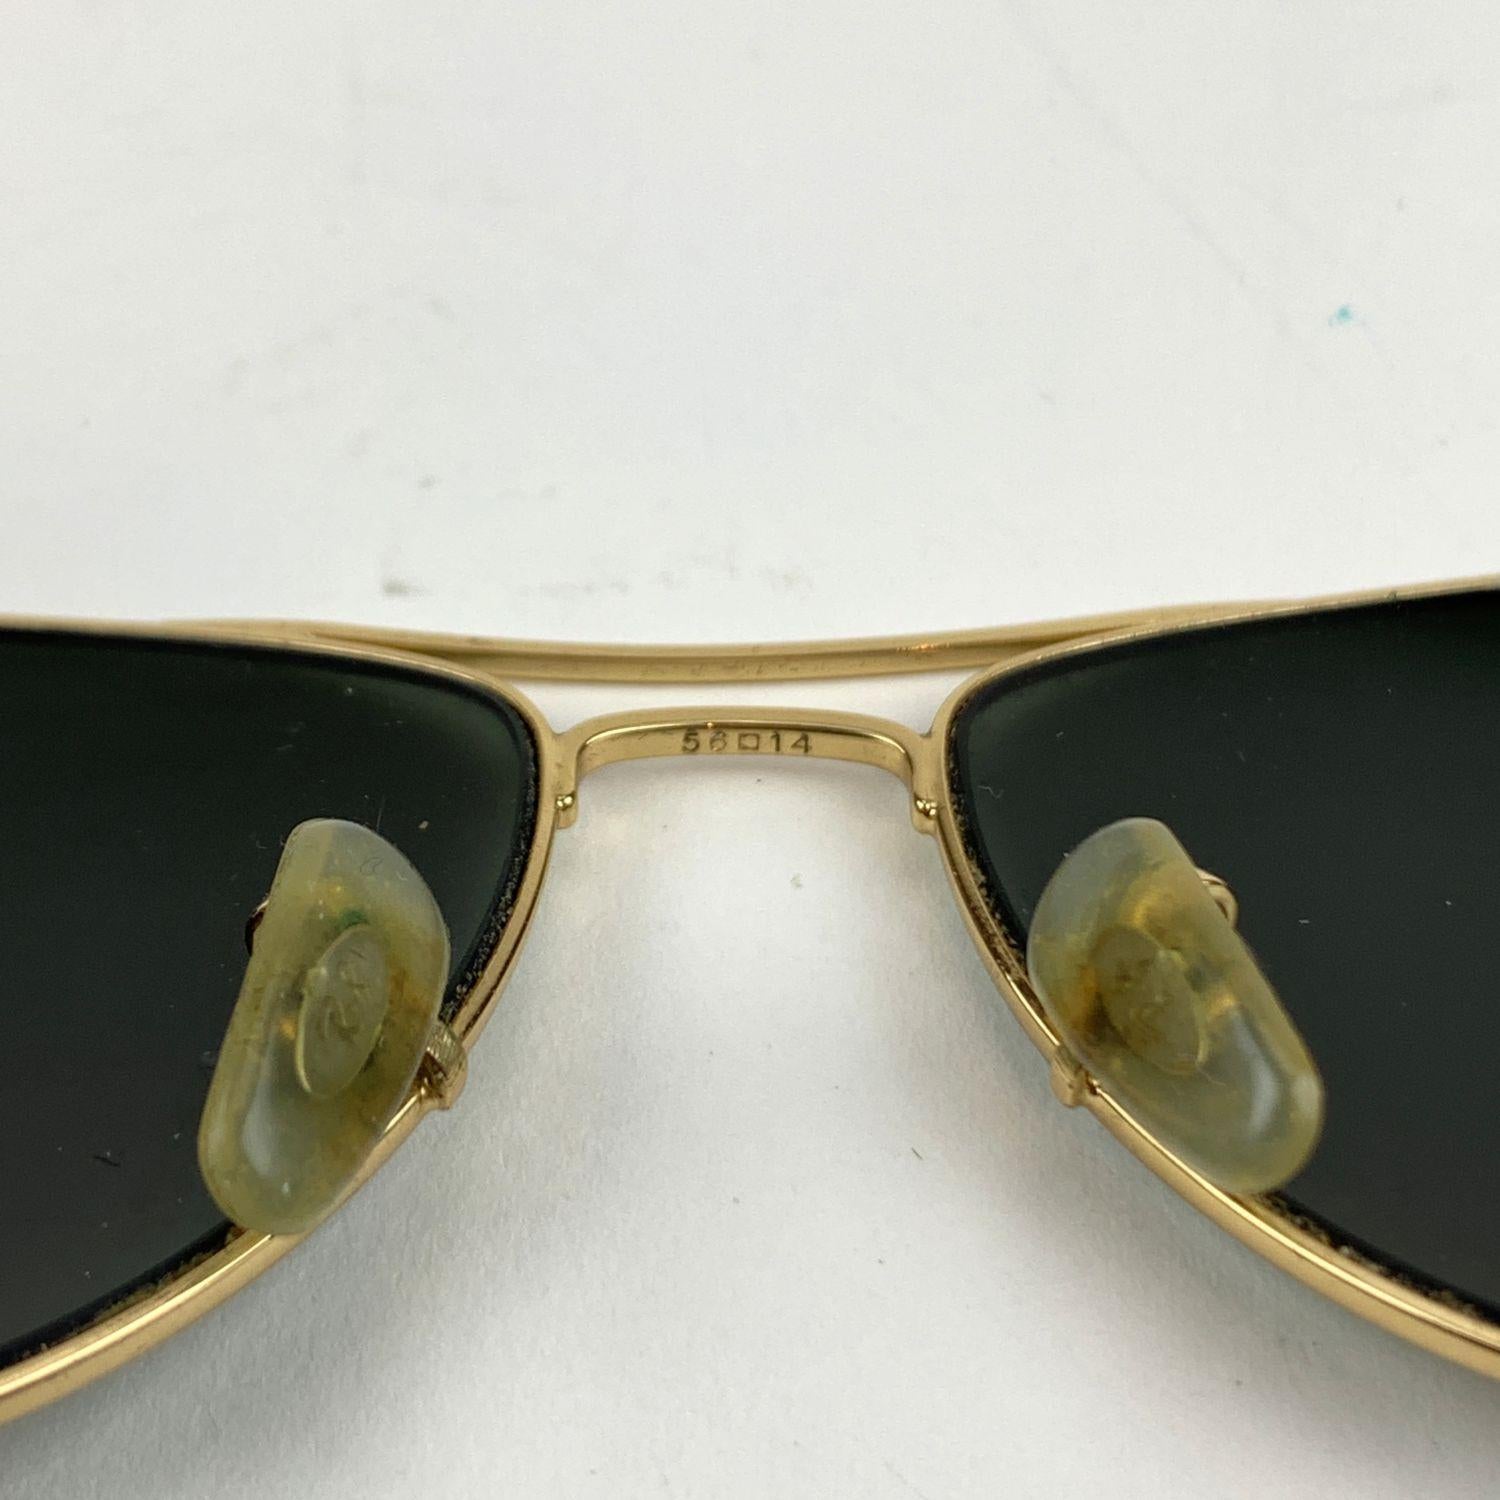 130 mm sunglasses